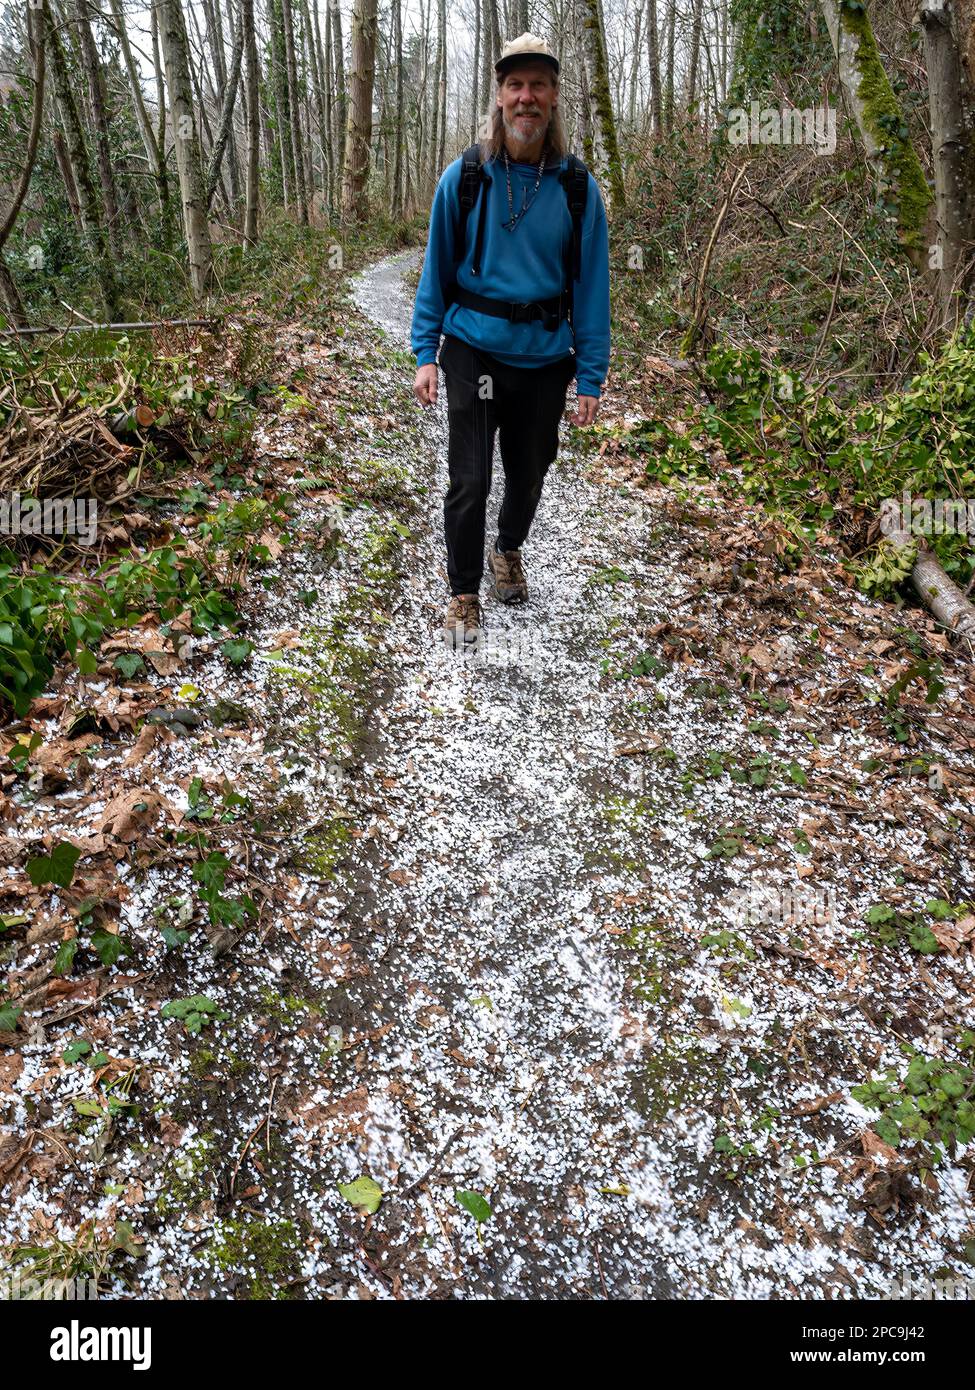 WA23252-00...WASHINGTON - randonnée sur un sentier couvert de grêle pendant une randonnée d'hiver au Mukilteo Trails and Tails Dog Park. Banque D'Images